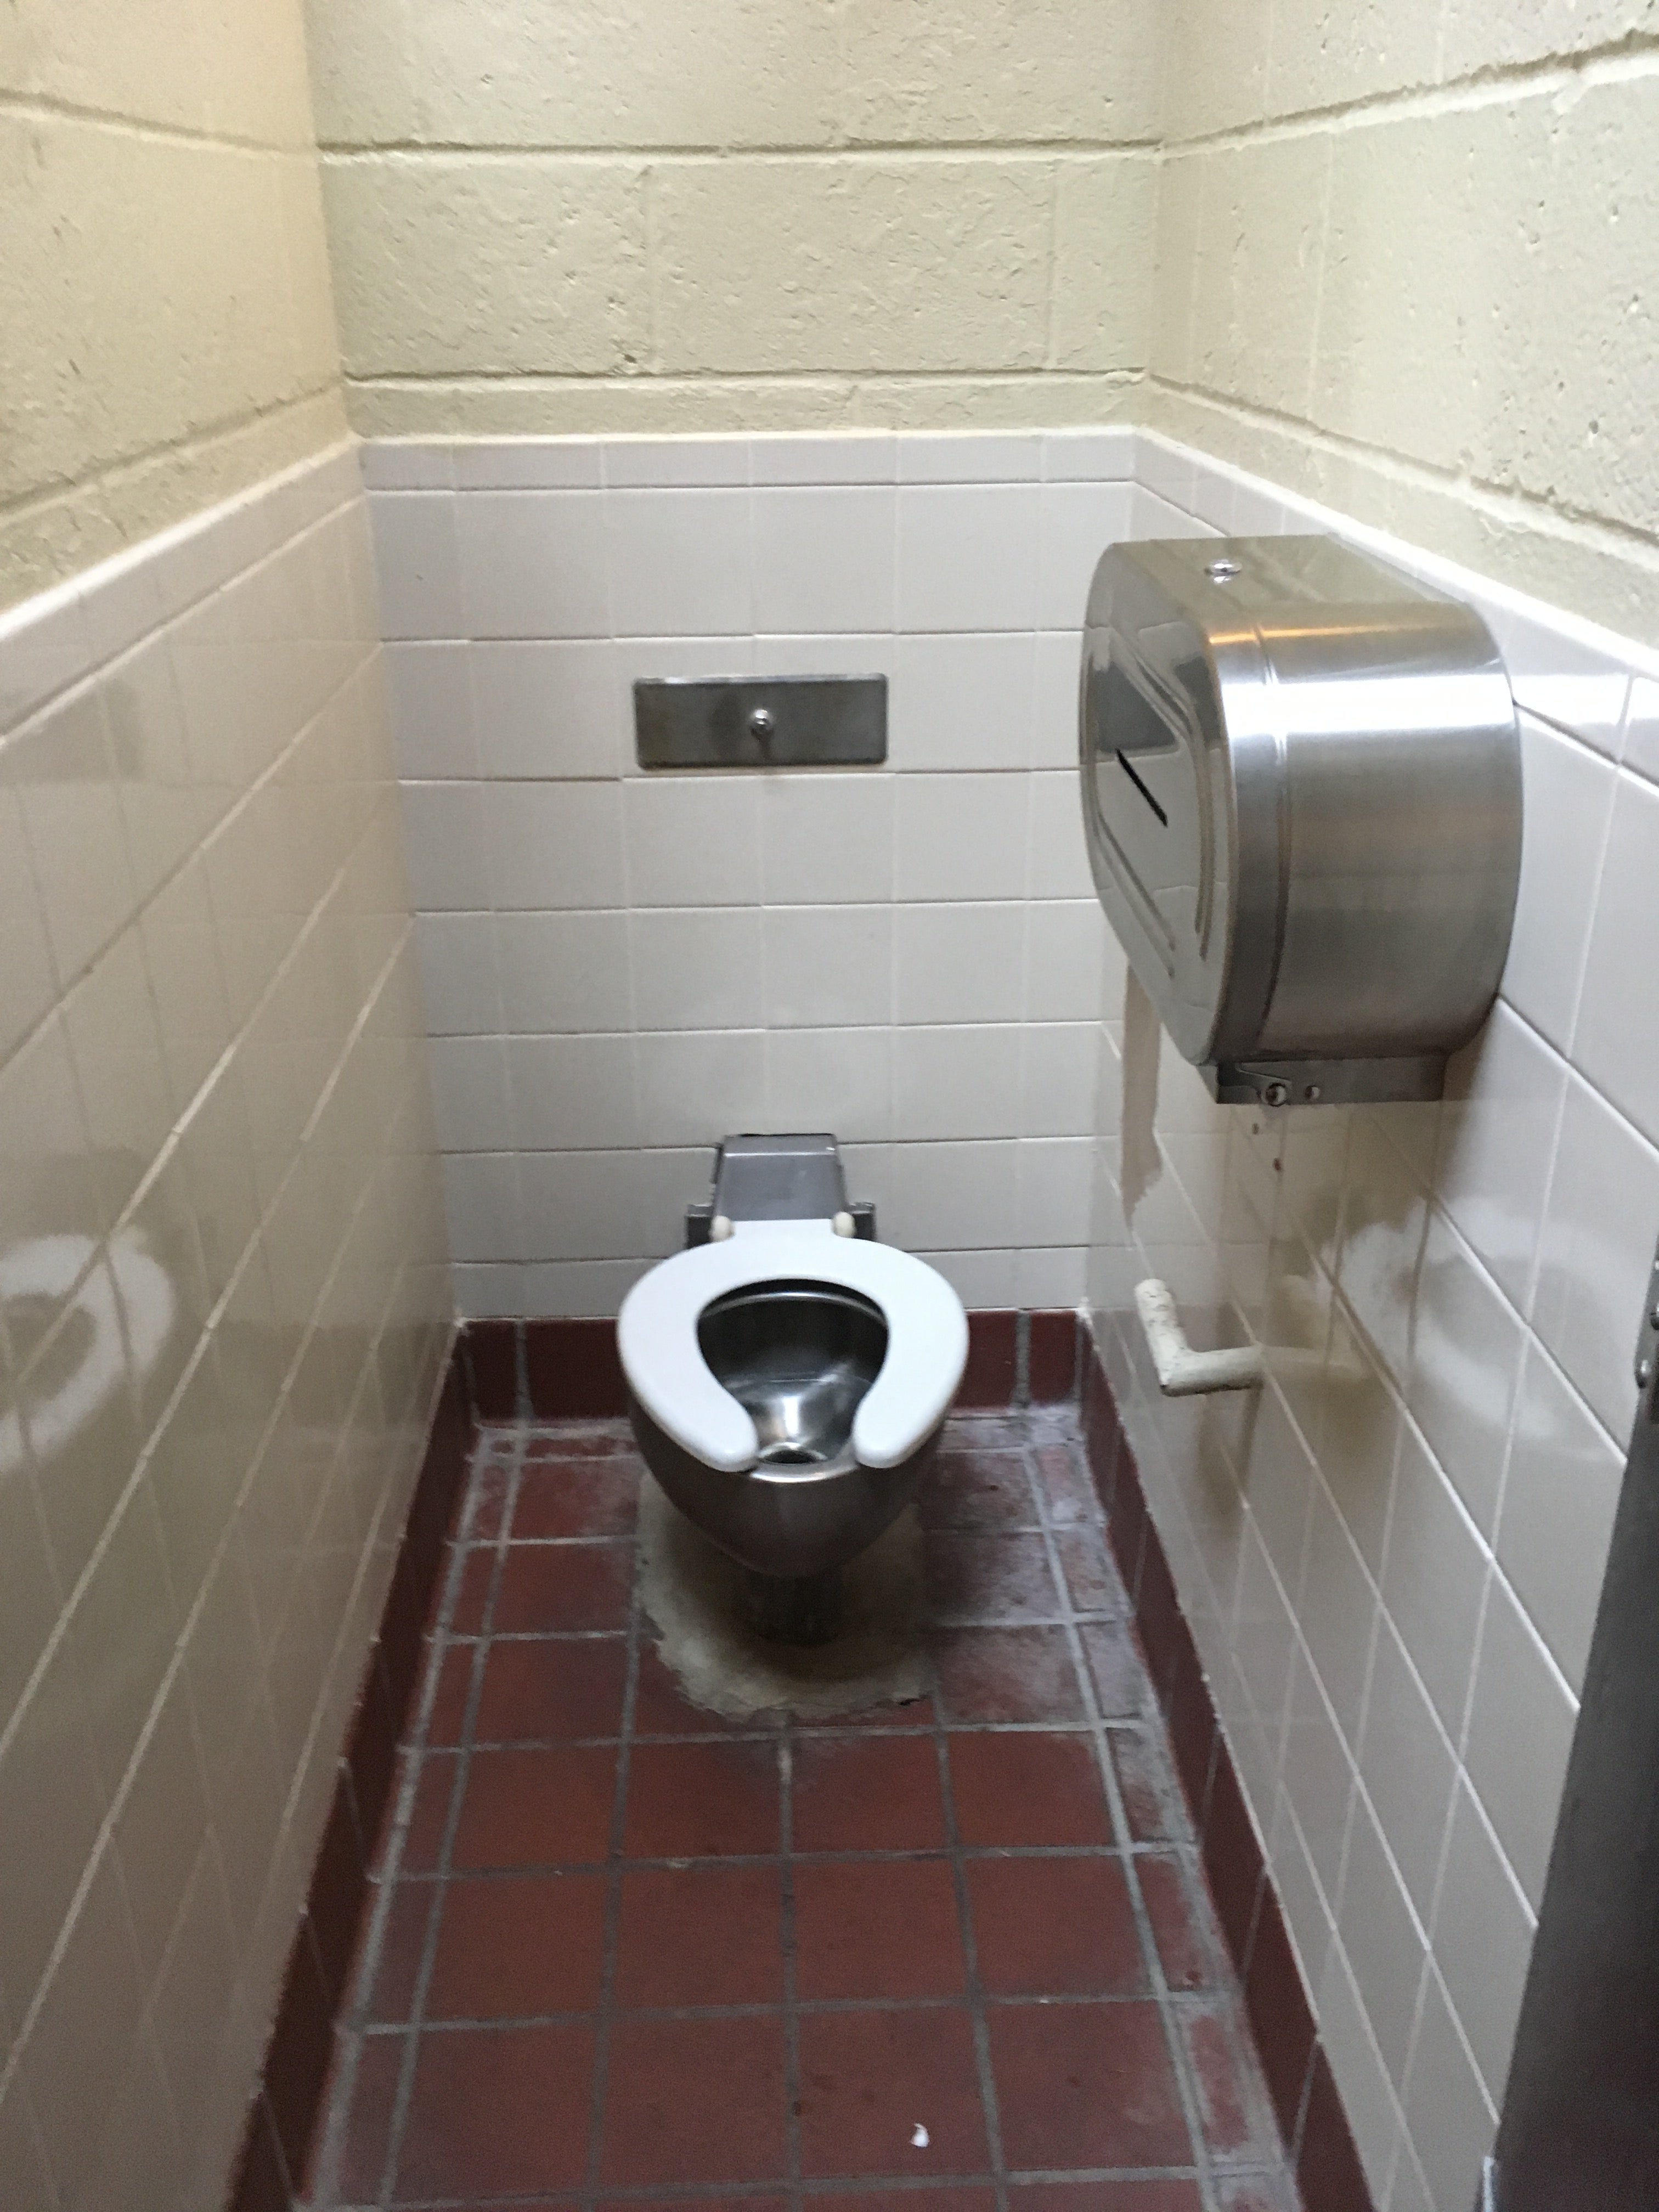 Restroom Toilet